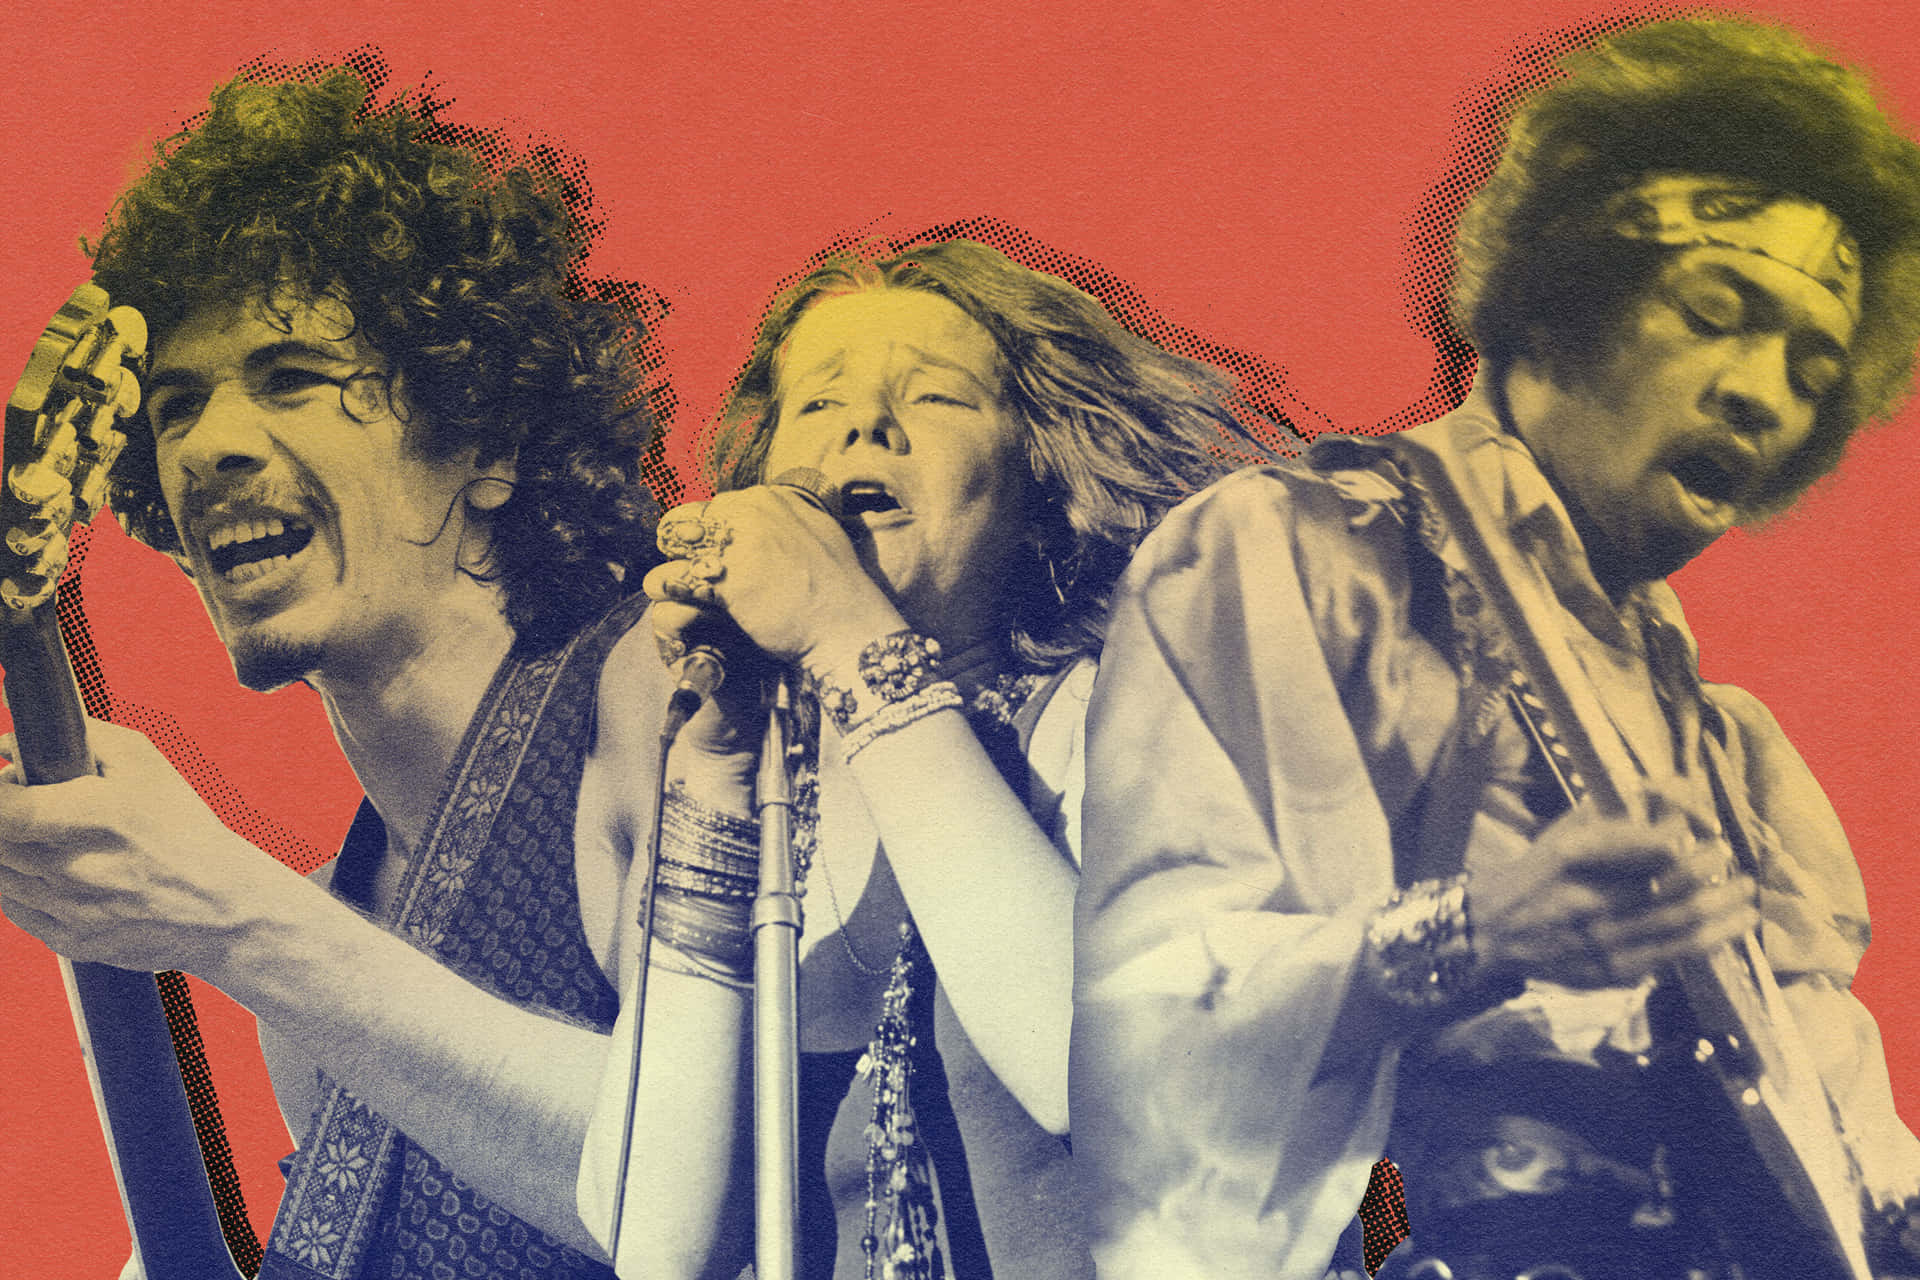 Woodstock Pictures Wallpaper